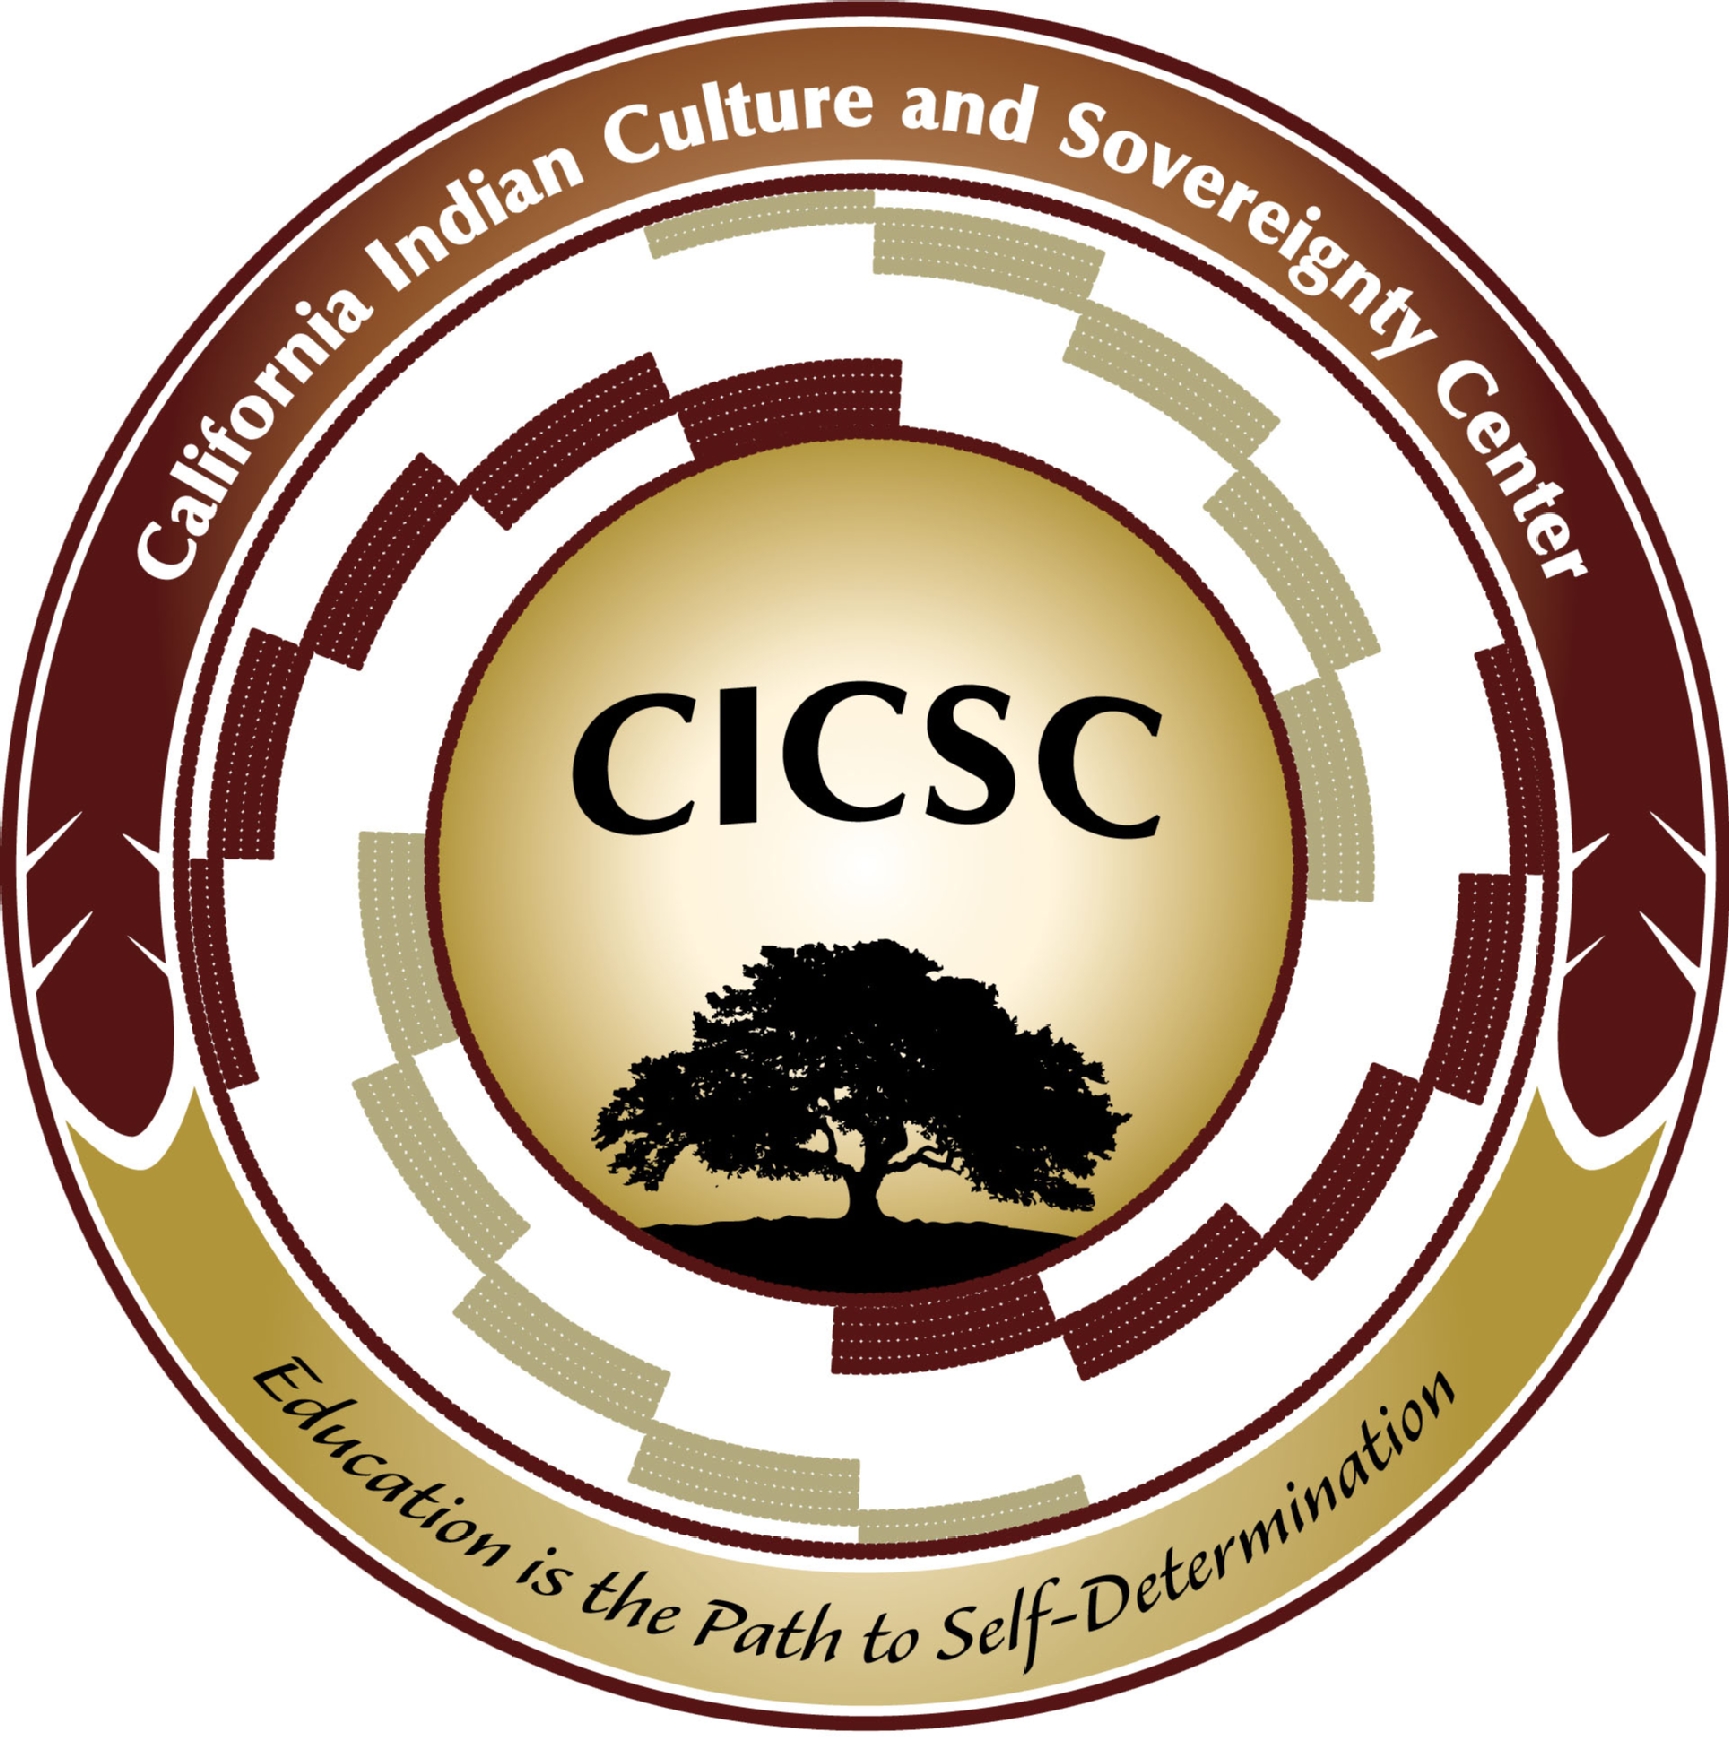 CICSC logo